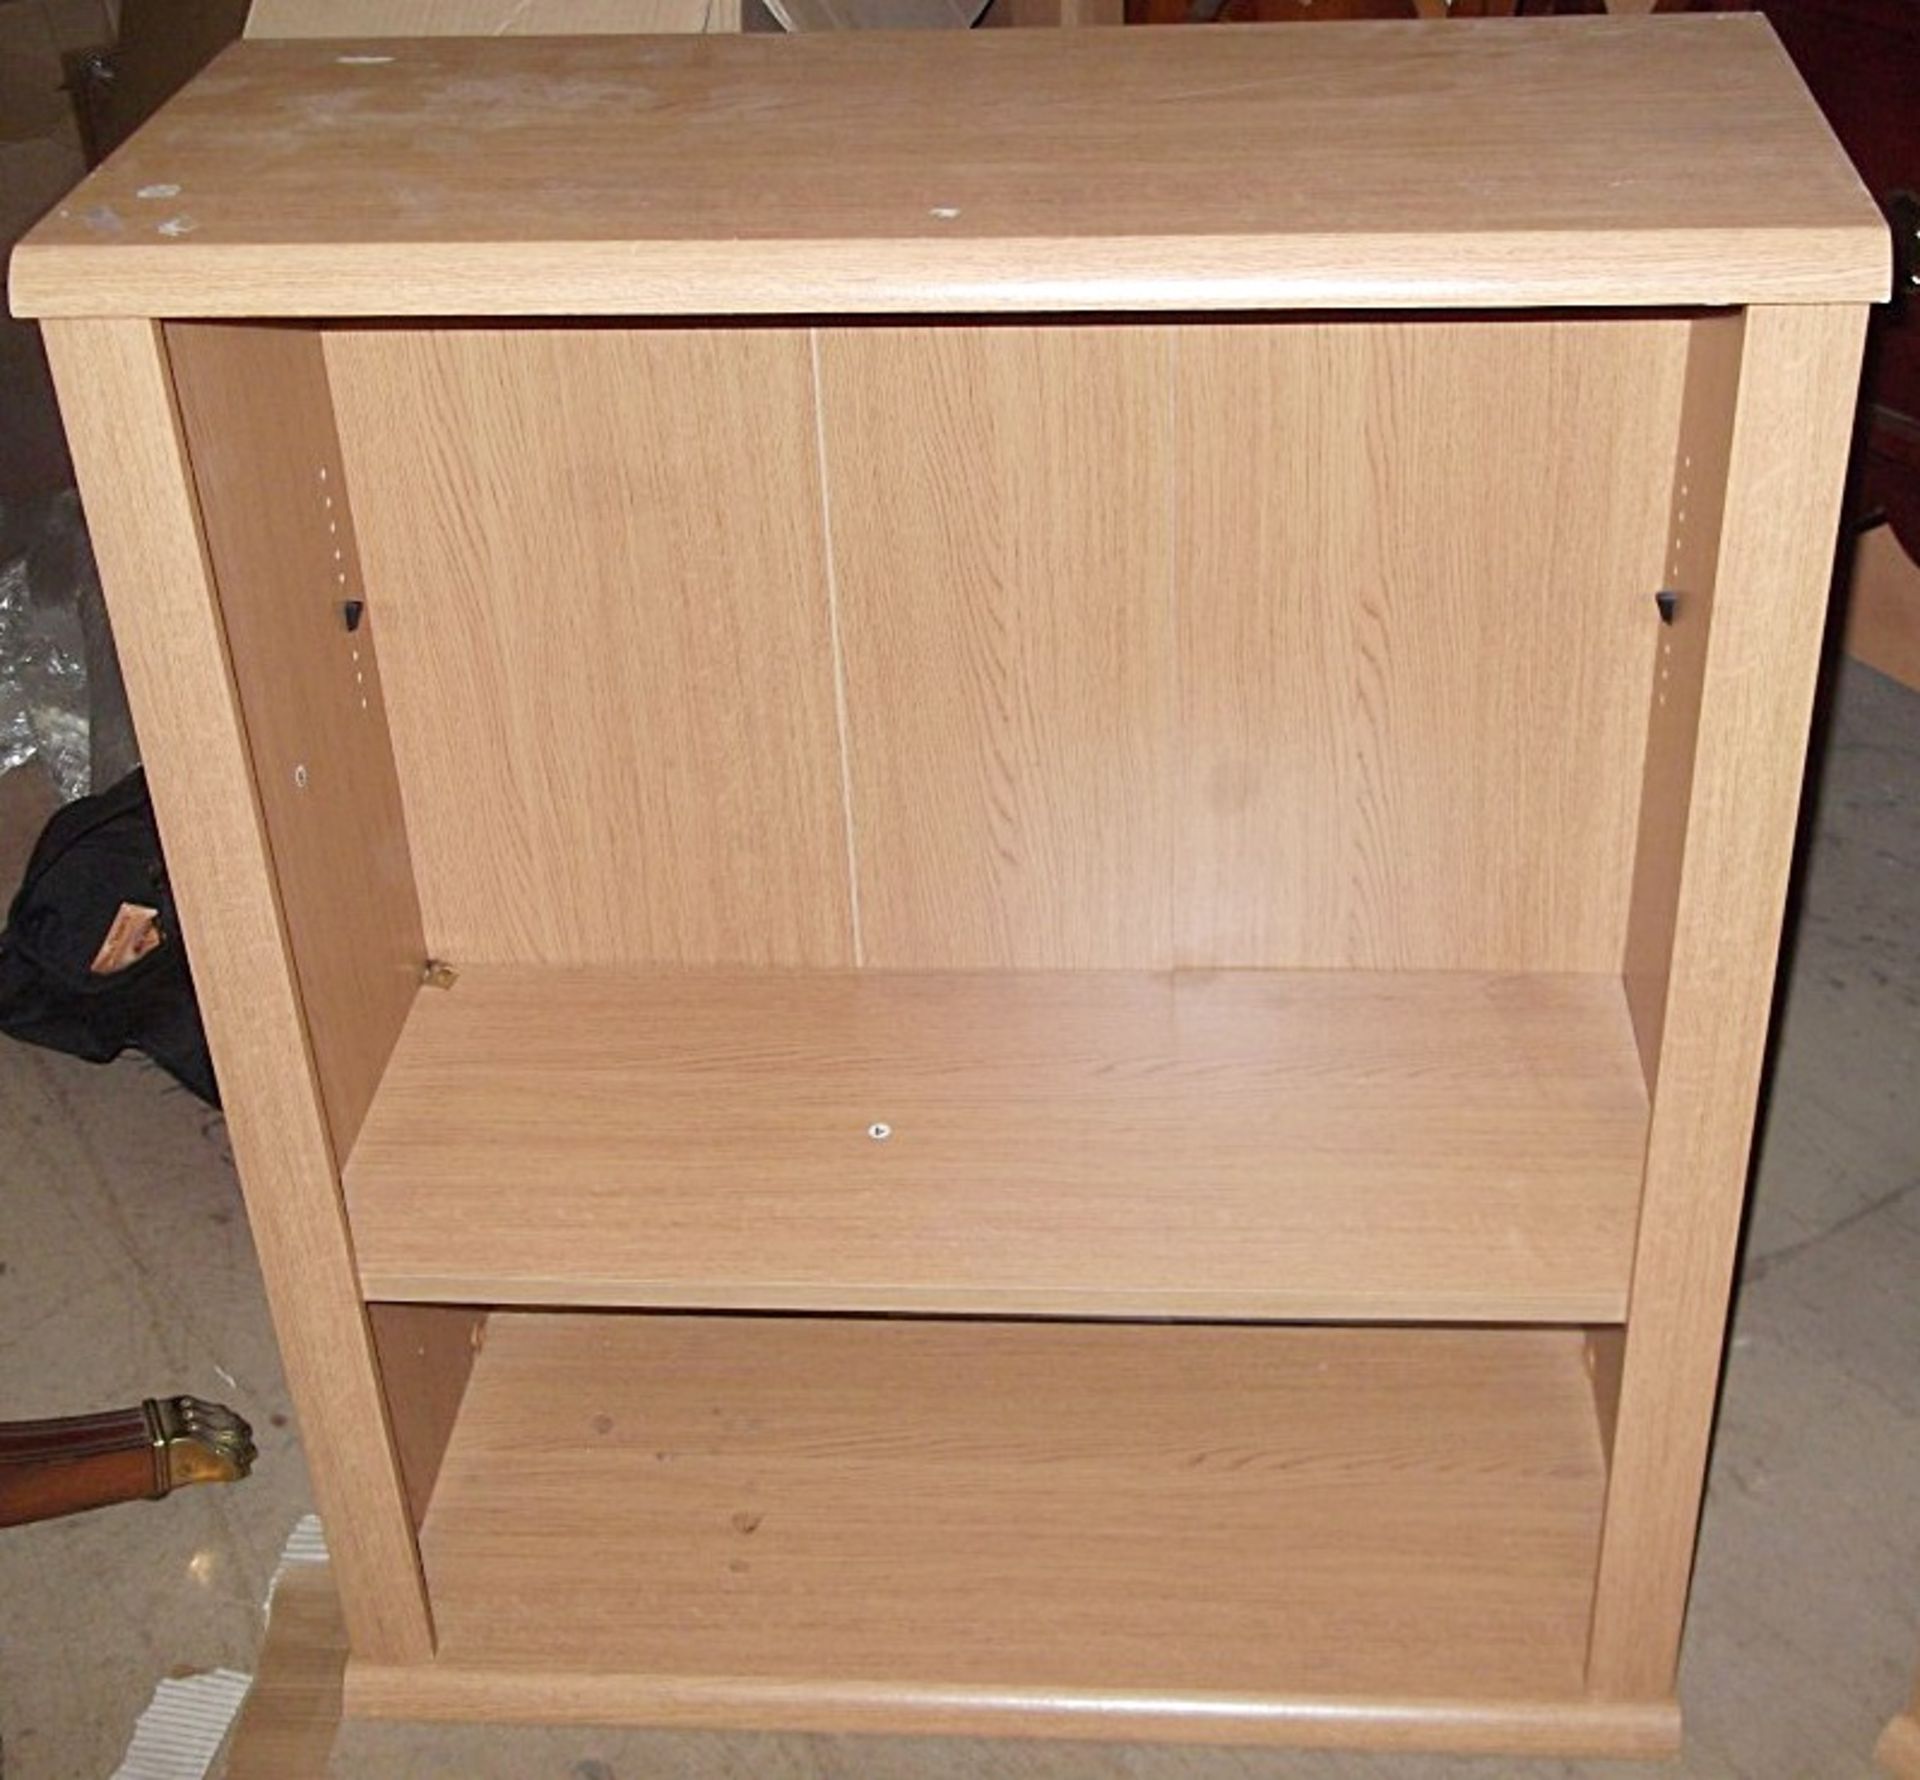 2 x Bookcases - Prebuilt - Dimensions: H80 x W80 x D33cm - PD069 / PD070 - CL079 - Location: Leeds - Image 3 of 5